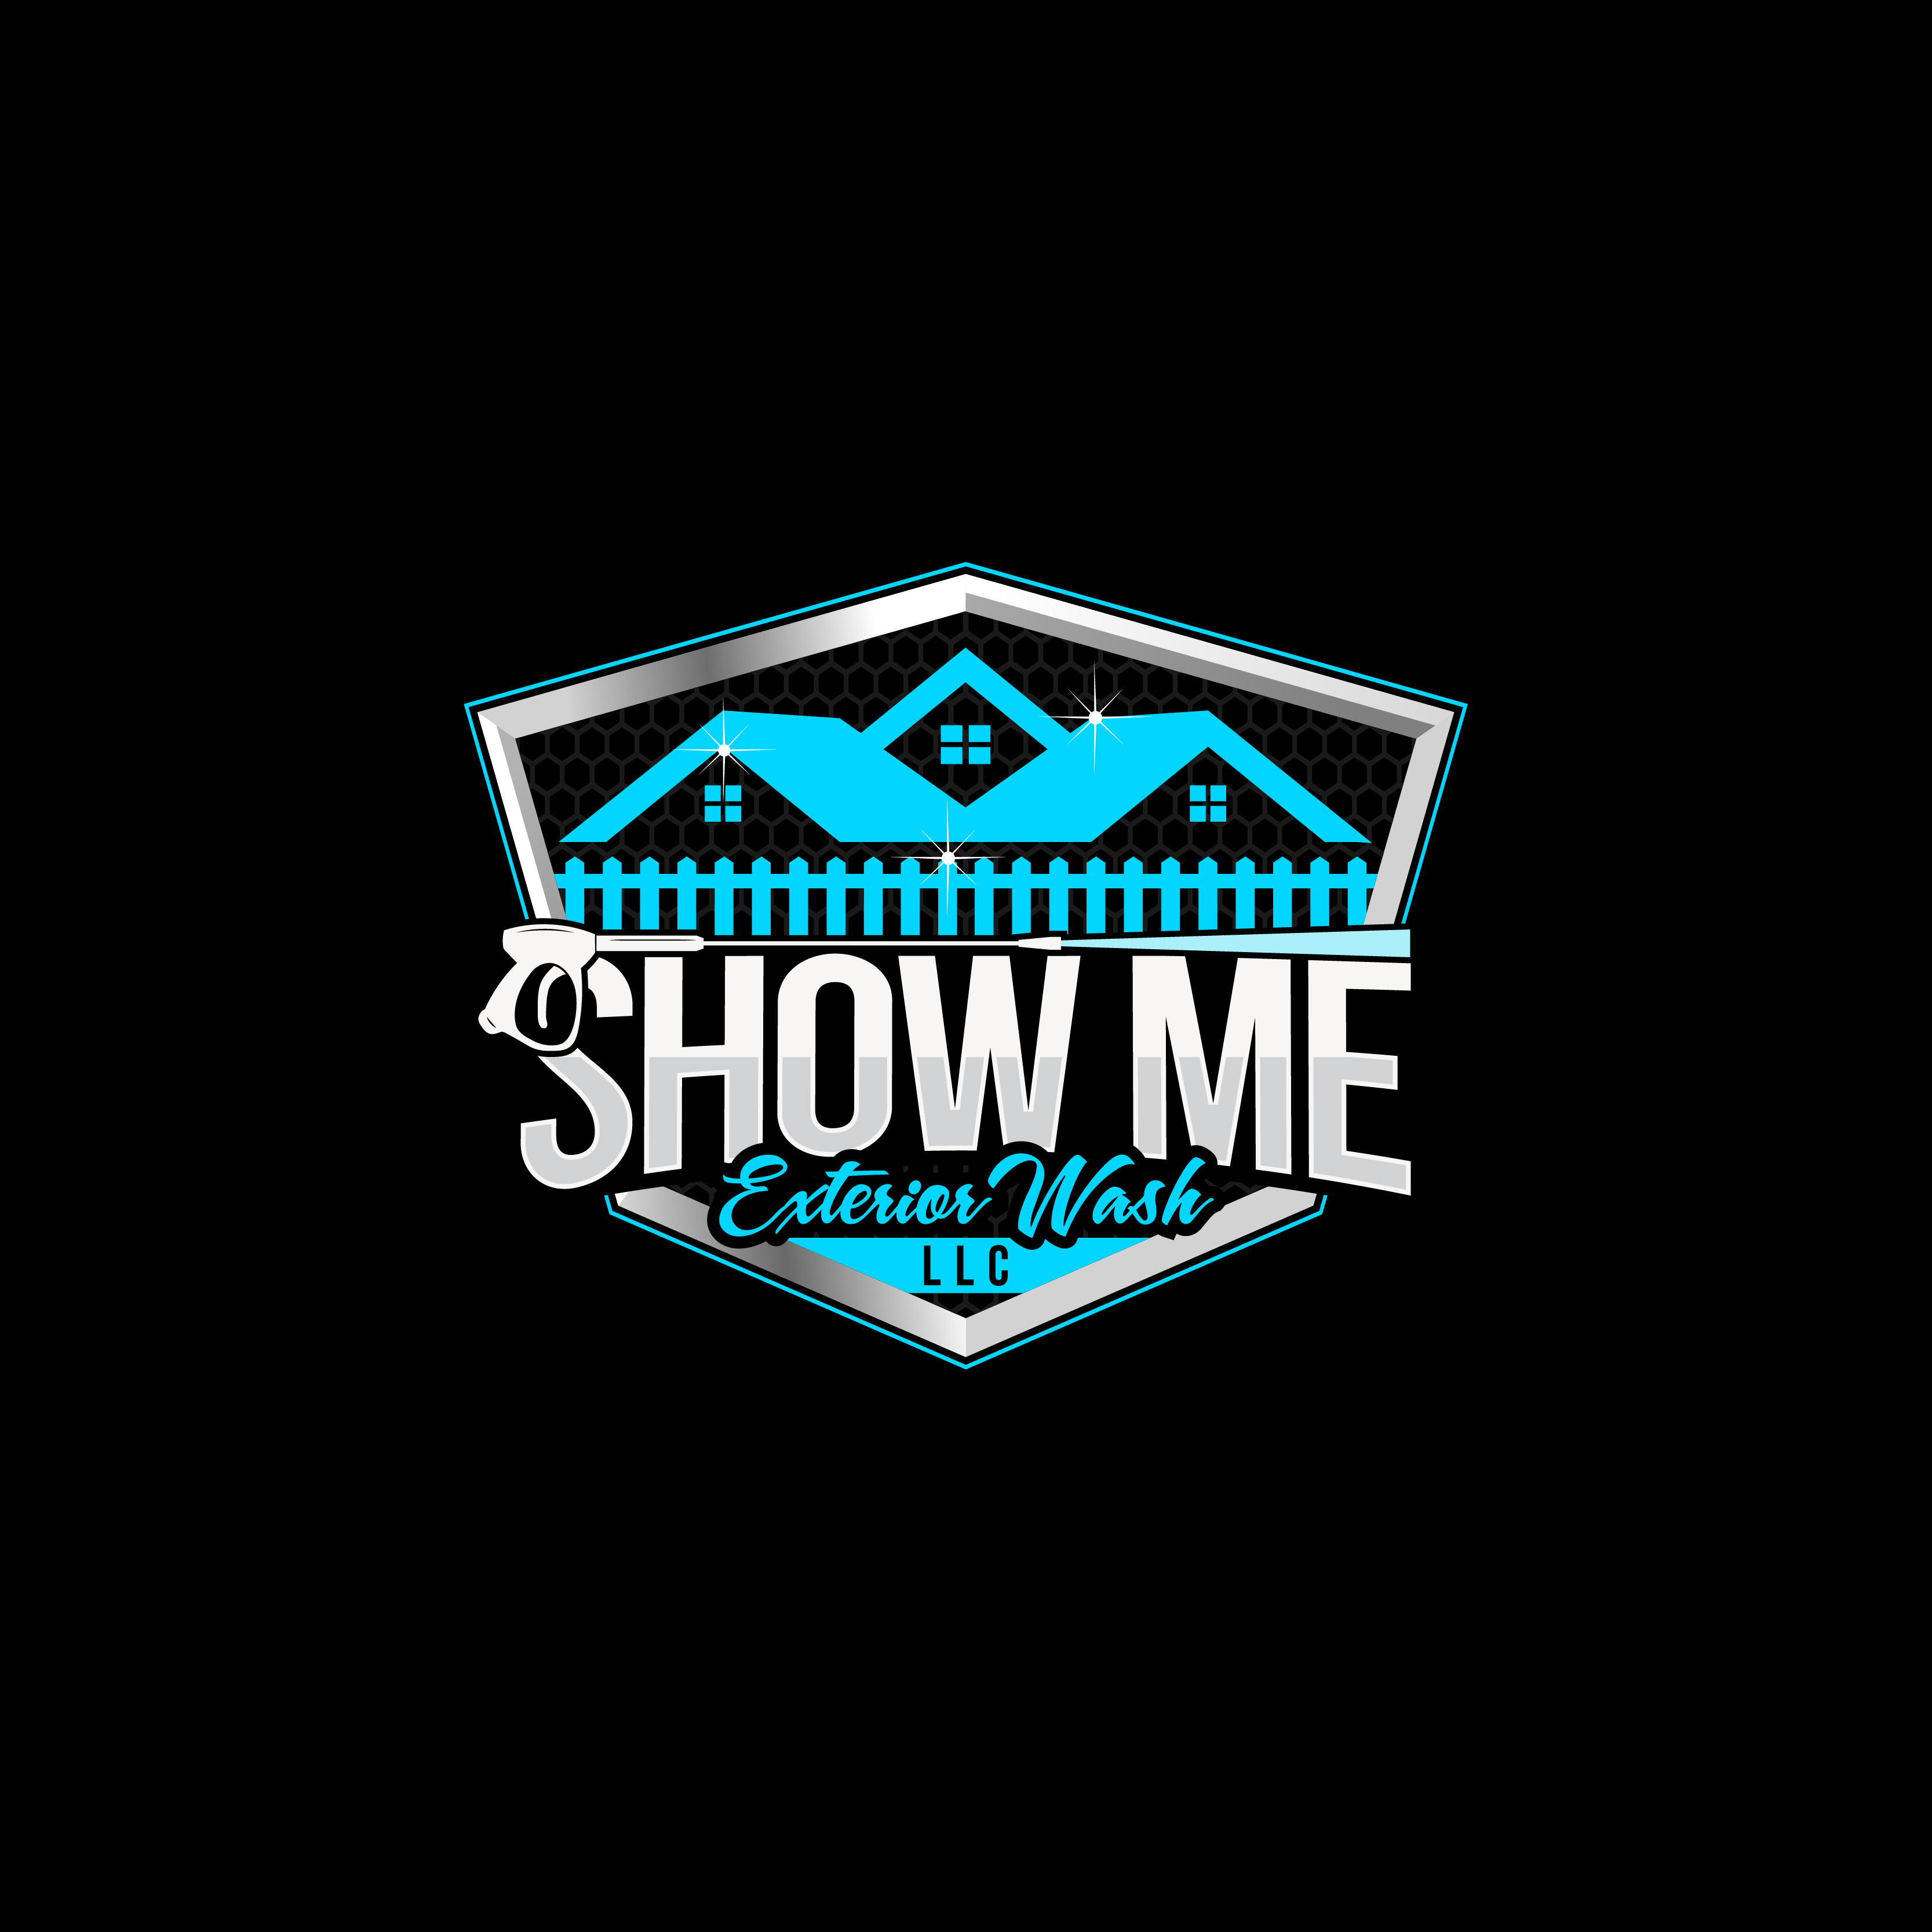 Show Me Exterior Wash, LLC Logo